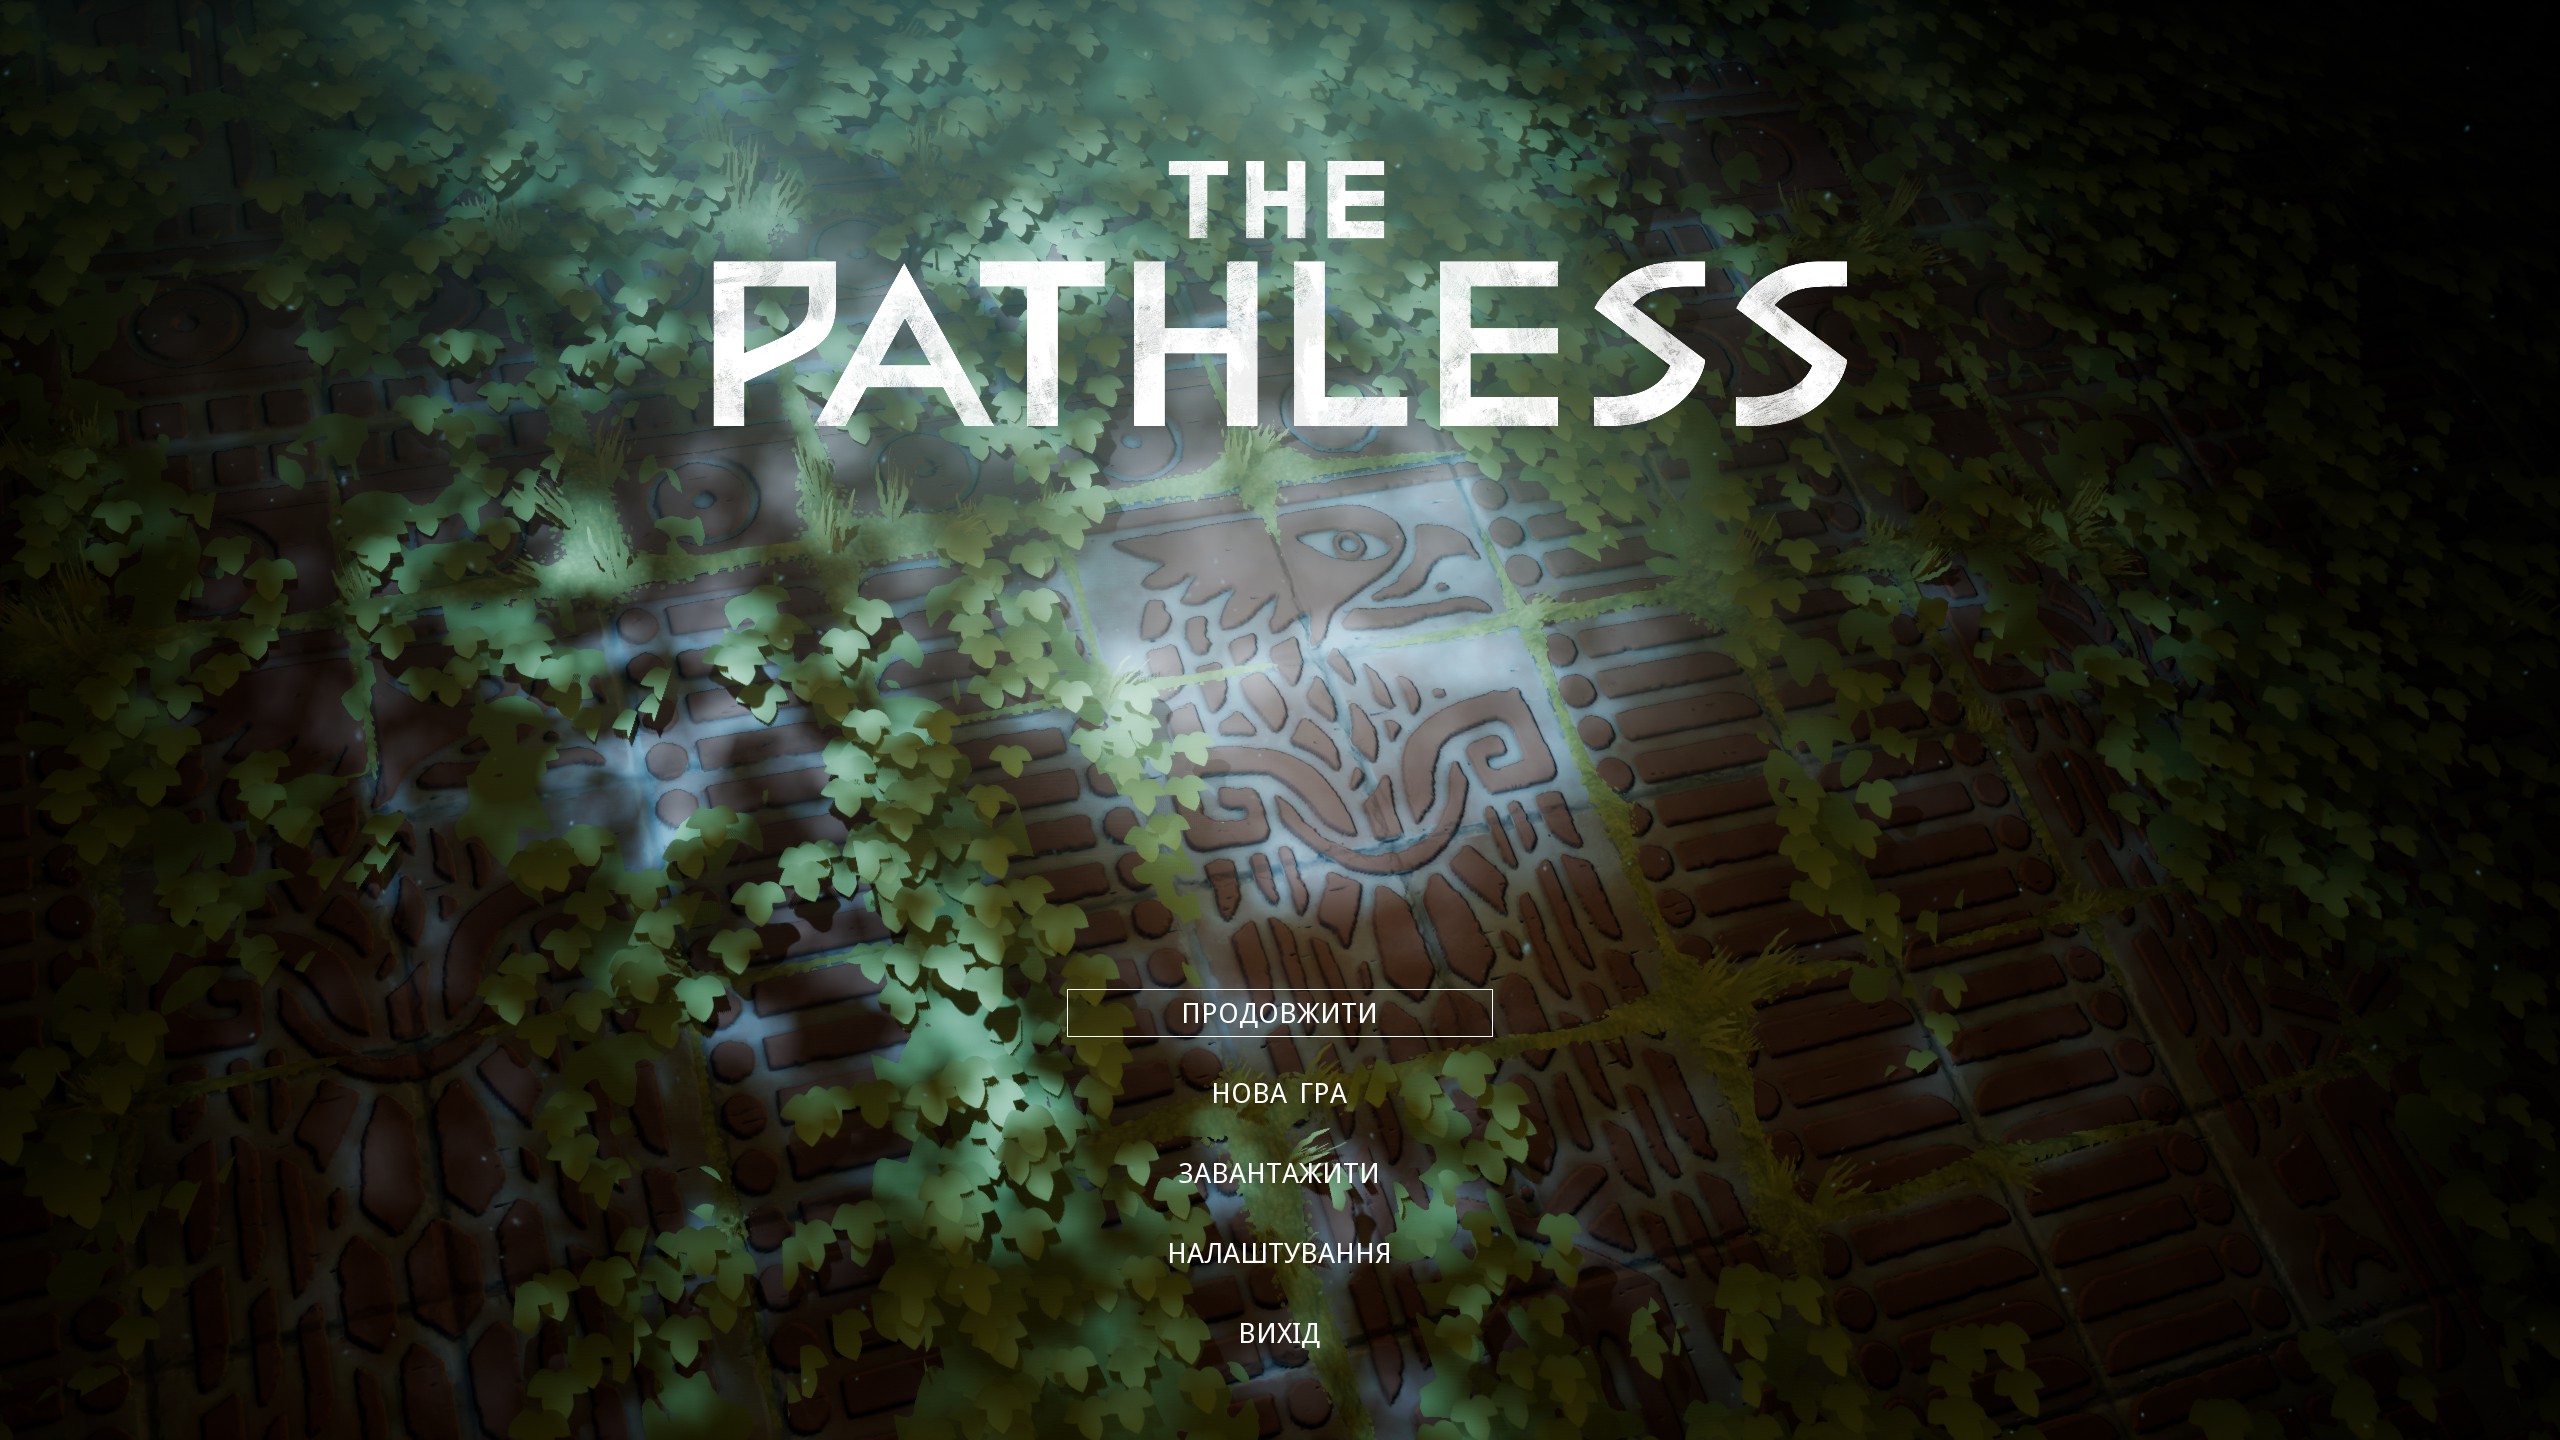 The pathless. Pathless игра. The pathless (ps5). The pathless logo. The pathless обложка.